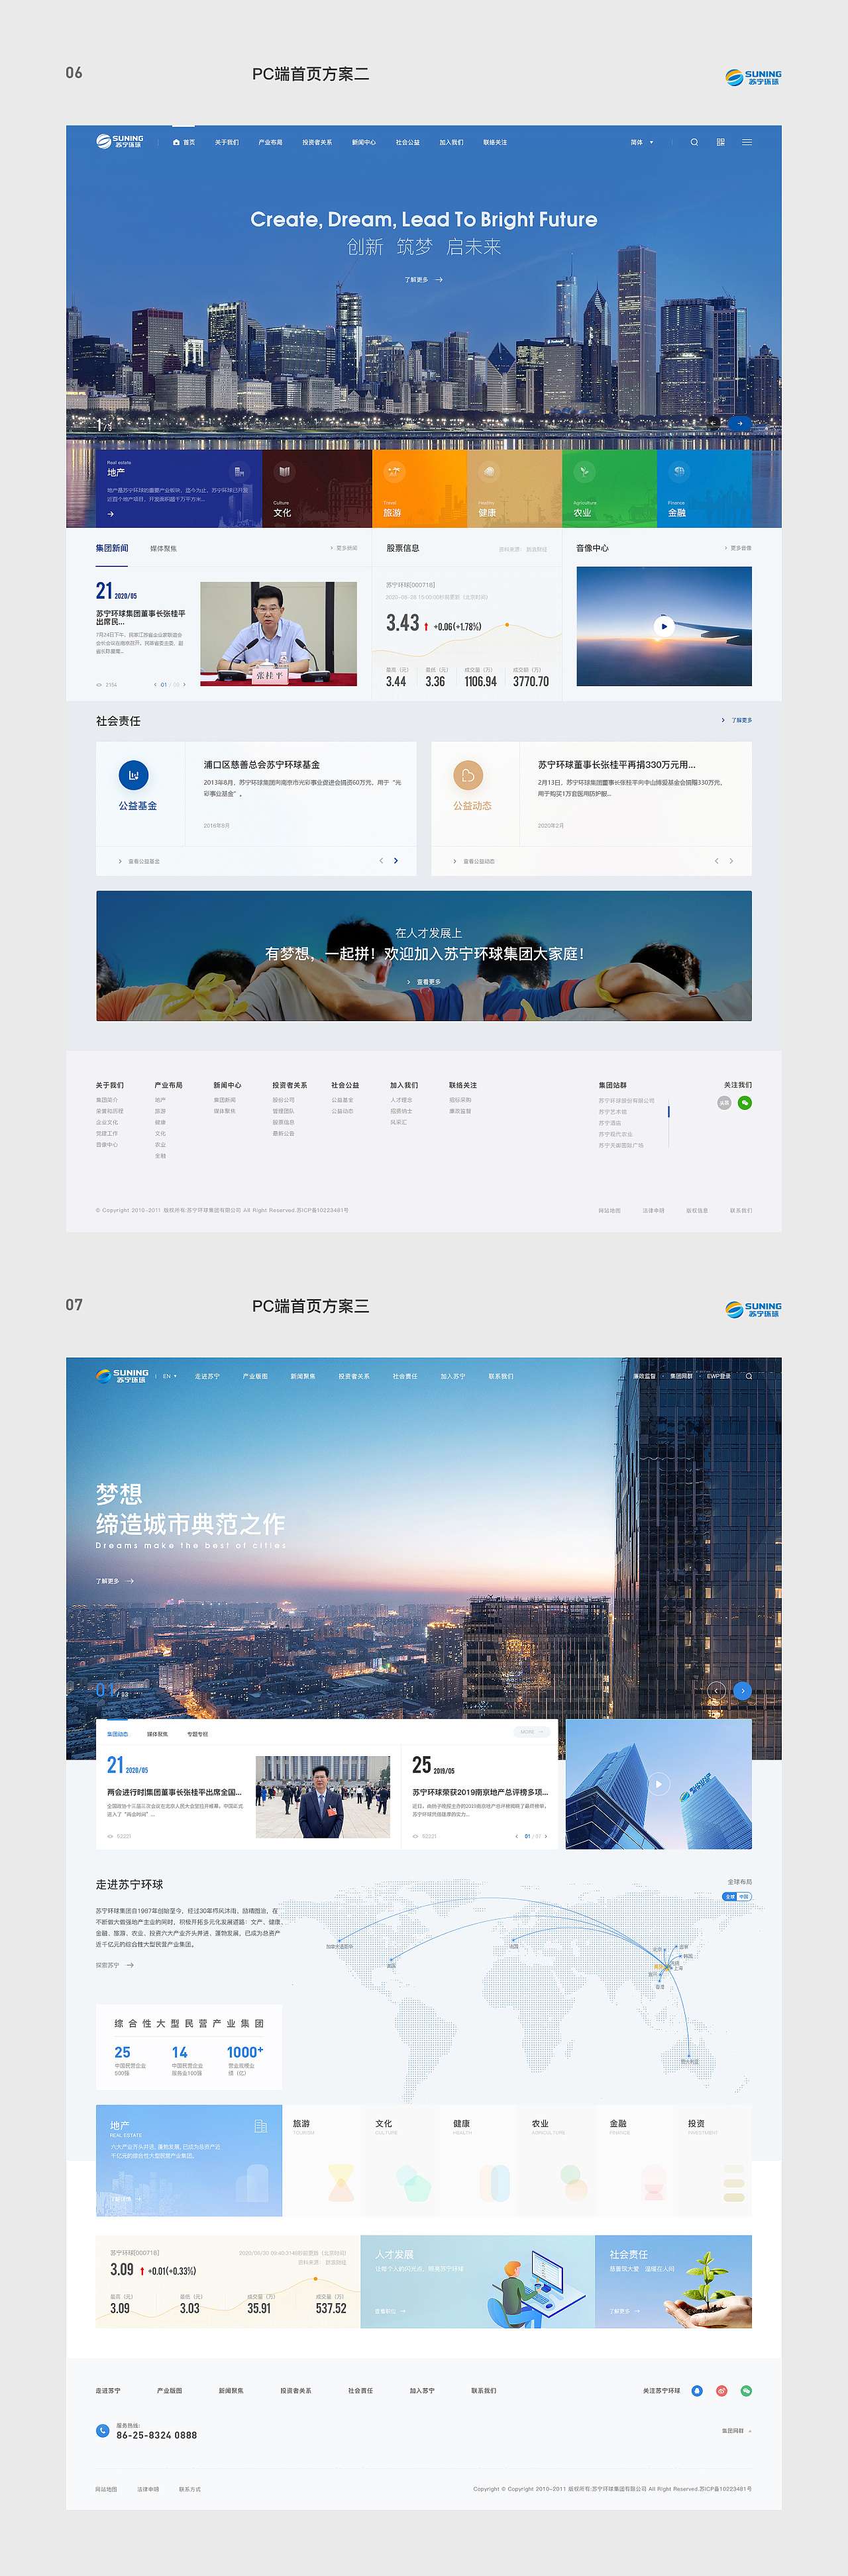 【2020集团企业官网】Official websites of 10 groups